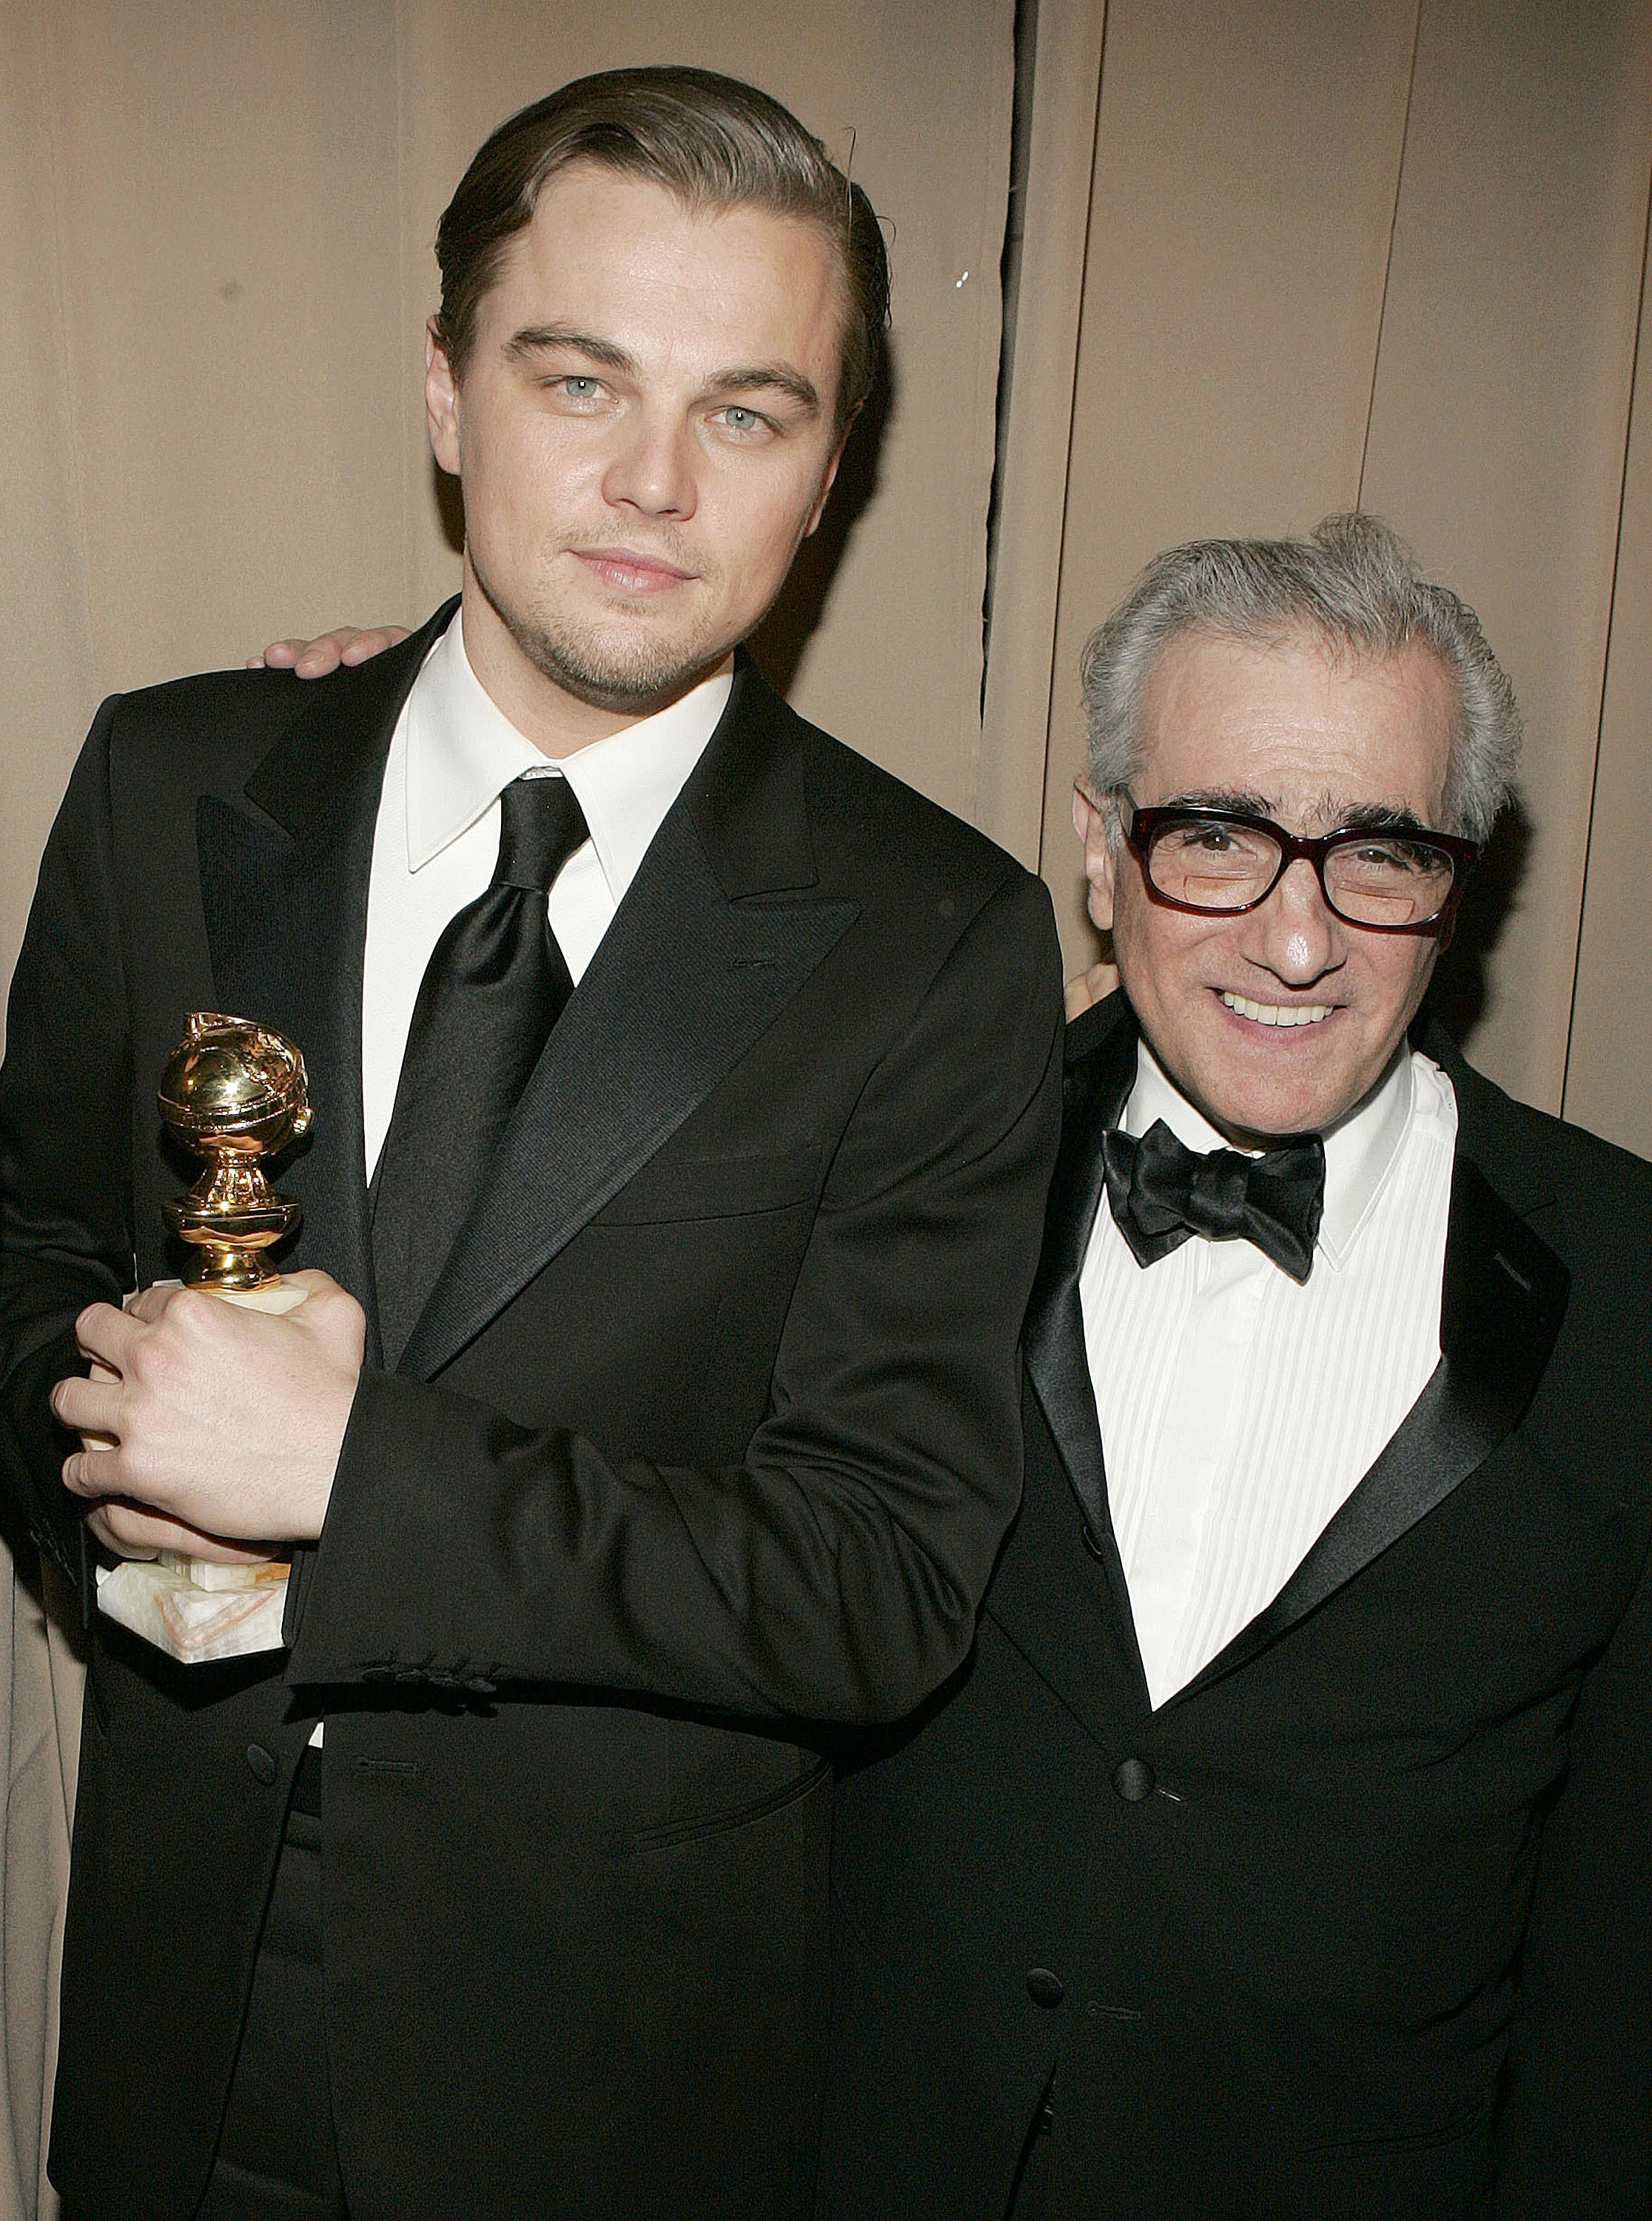 Леонардо Ді Капріо та Мартін Скорсезе, переможці в номінації "Найкращий драматичний фільм" за фільм "Авіатор", церемонія "Золотий Глобус", 2005 рік